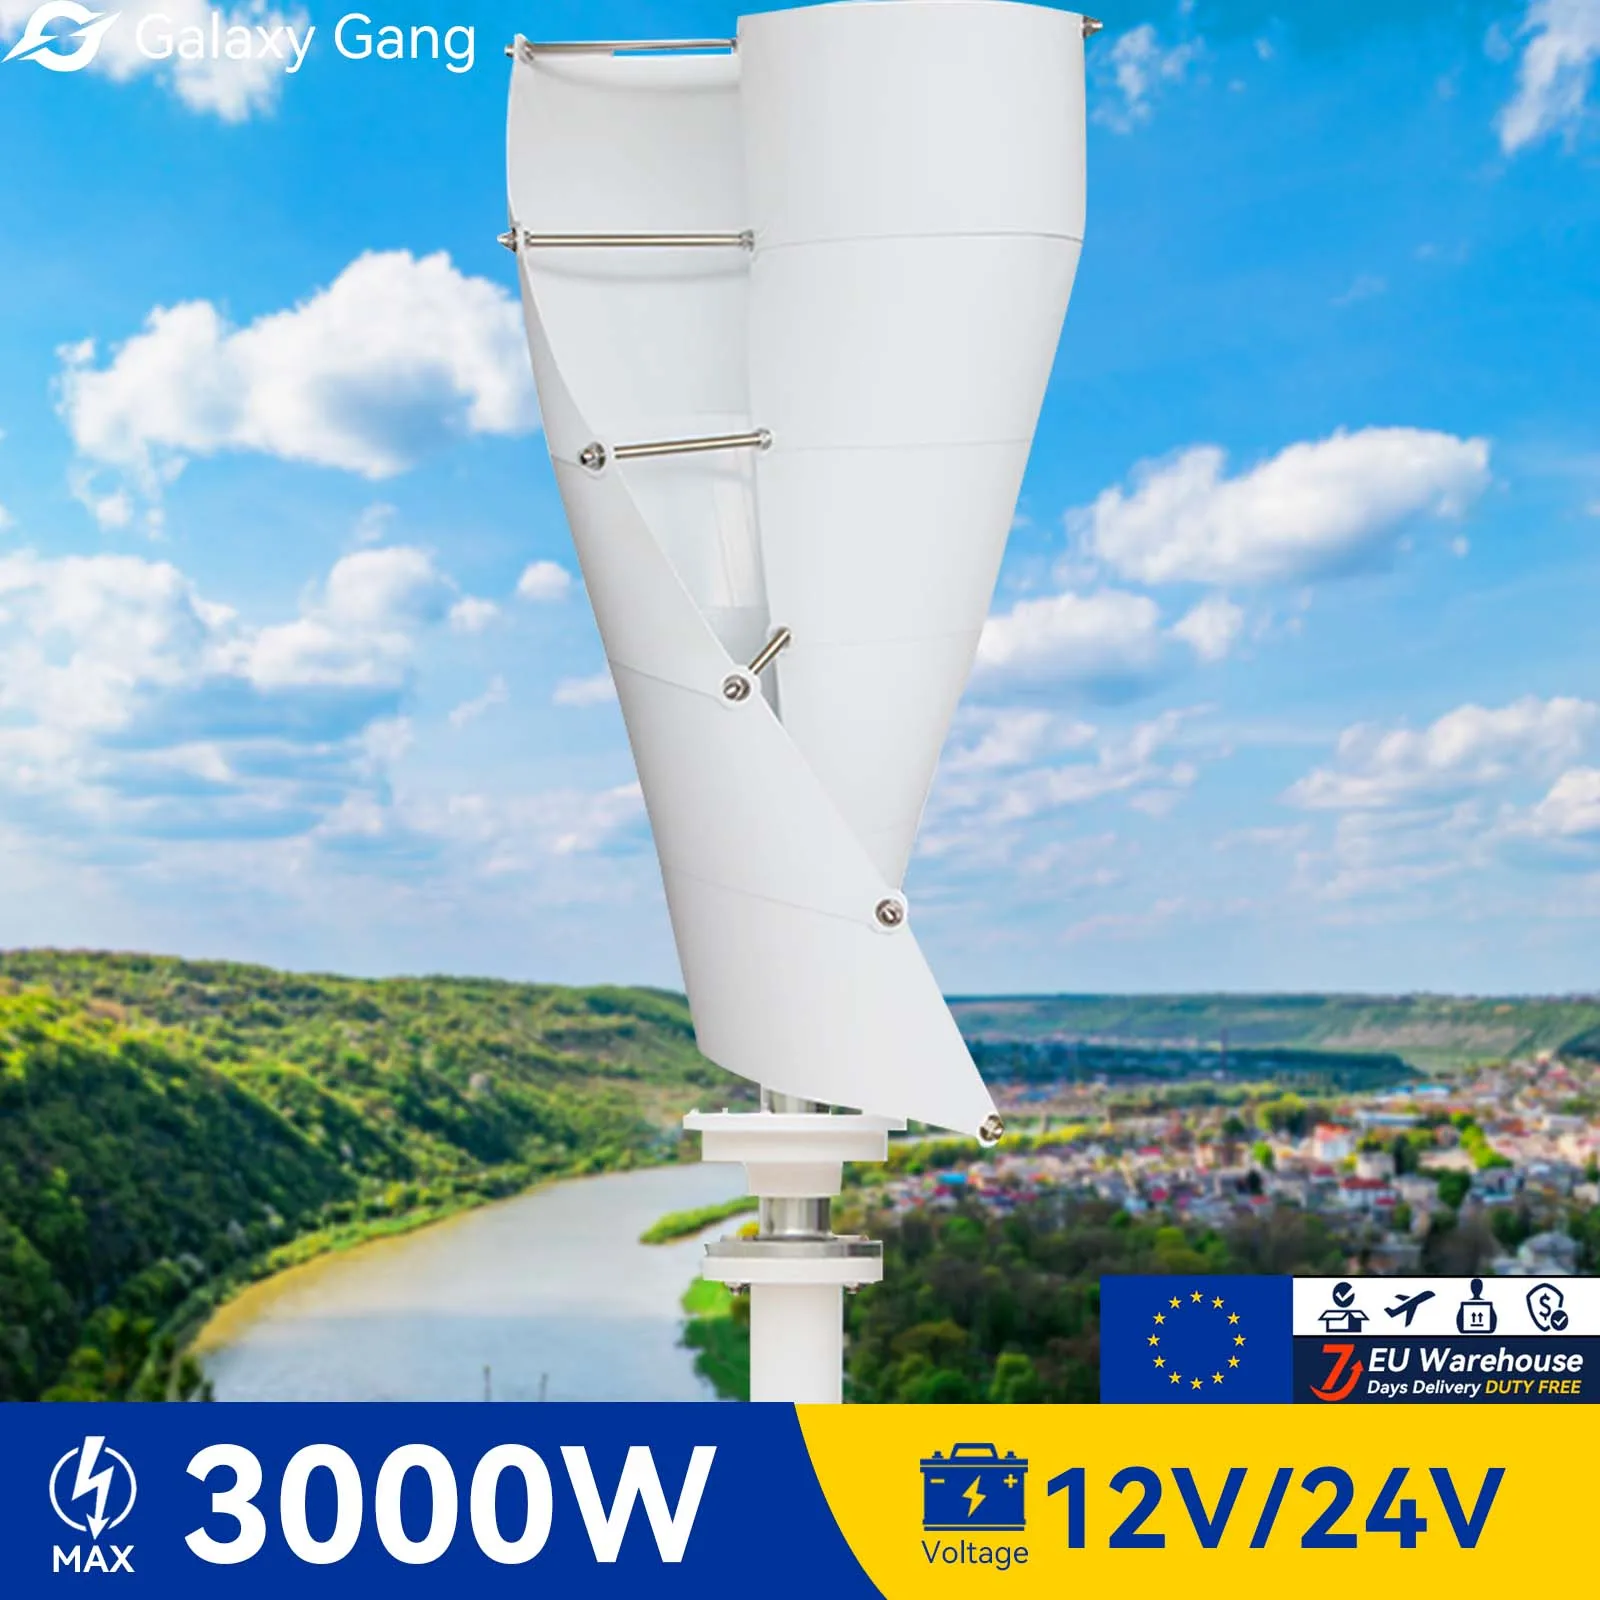 

Вертикальный ветряной генератор Galaxy Gang 3000 Вт 3 кВт 12 В 24 в 48 в ветряные мельницы с гибридным контроллером MPPT для домашнего использования